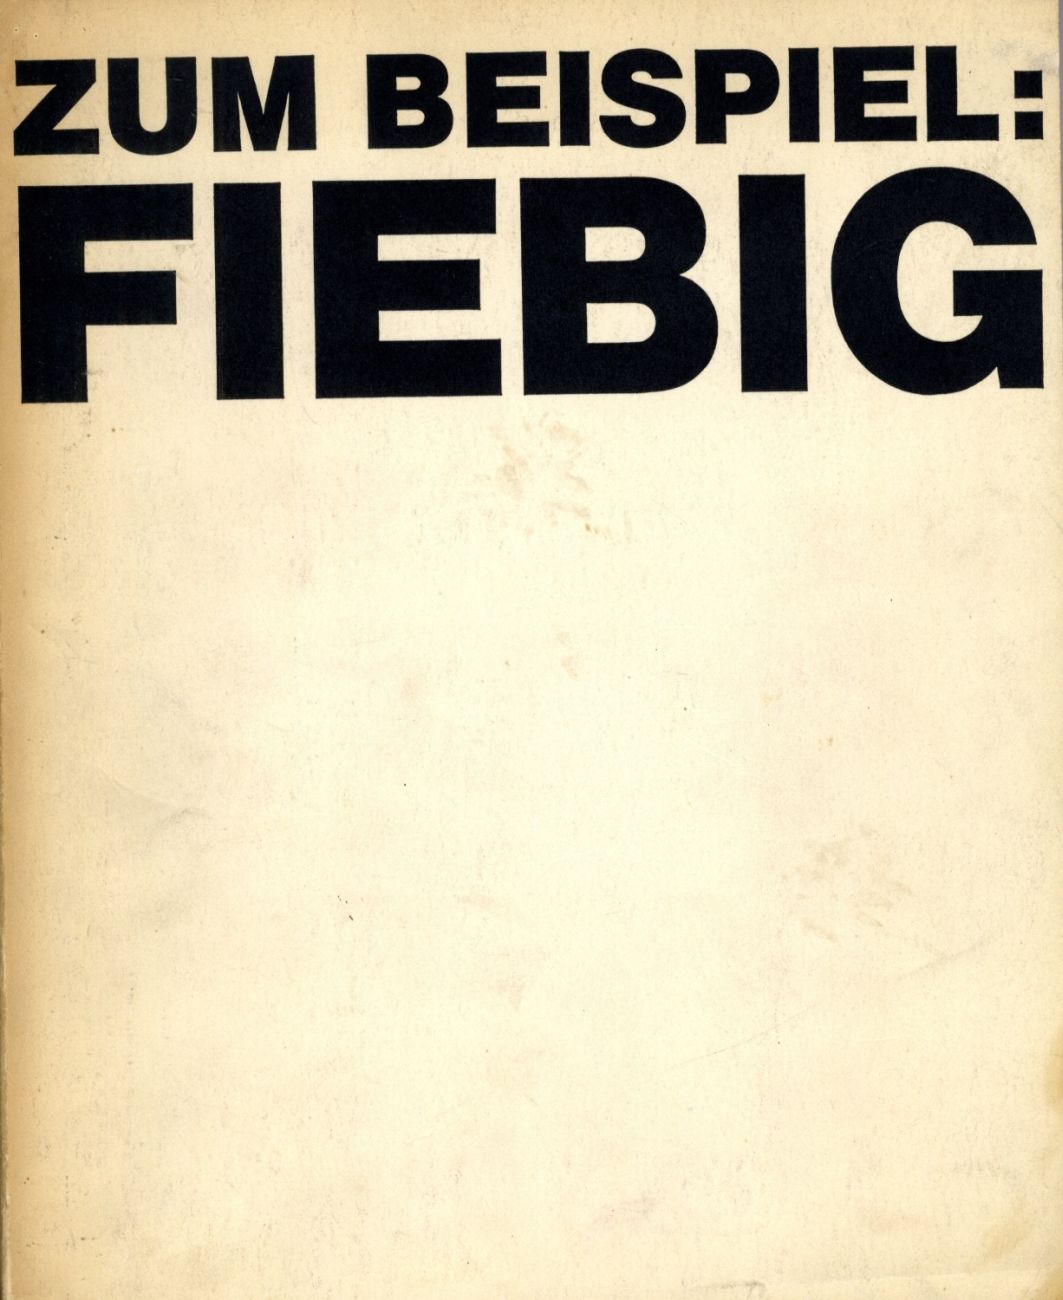 Fiebig Art book, Eberhard Fiebig 1971Katalog zur Ausstellung "z. B. Fiebig" von &hellip;